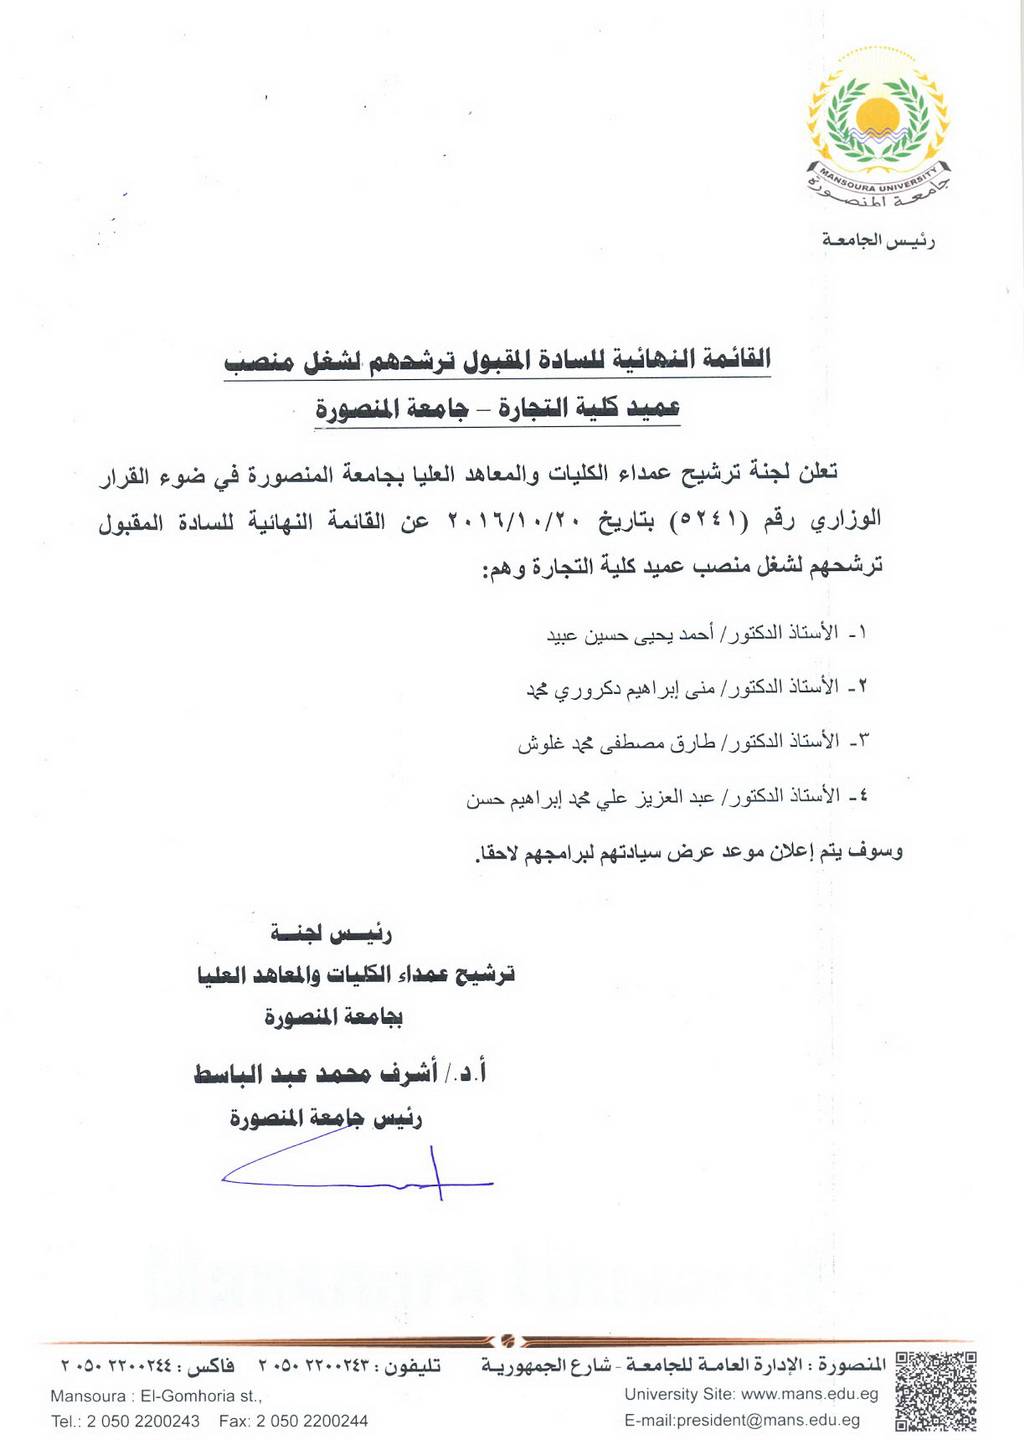 القائمة النهائية للسادة المقبول ترشحهم لشغل منصب عميد كلية التجارة - جامعة المنصورة